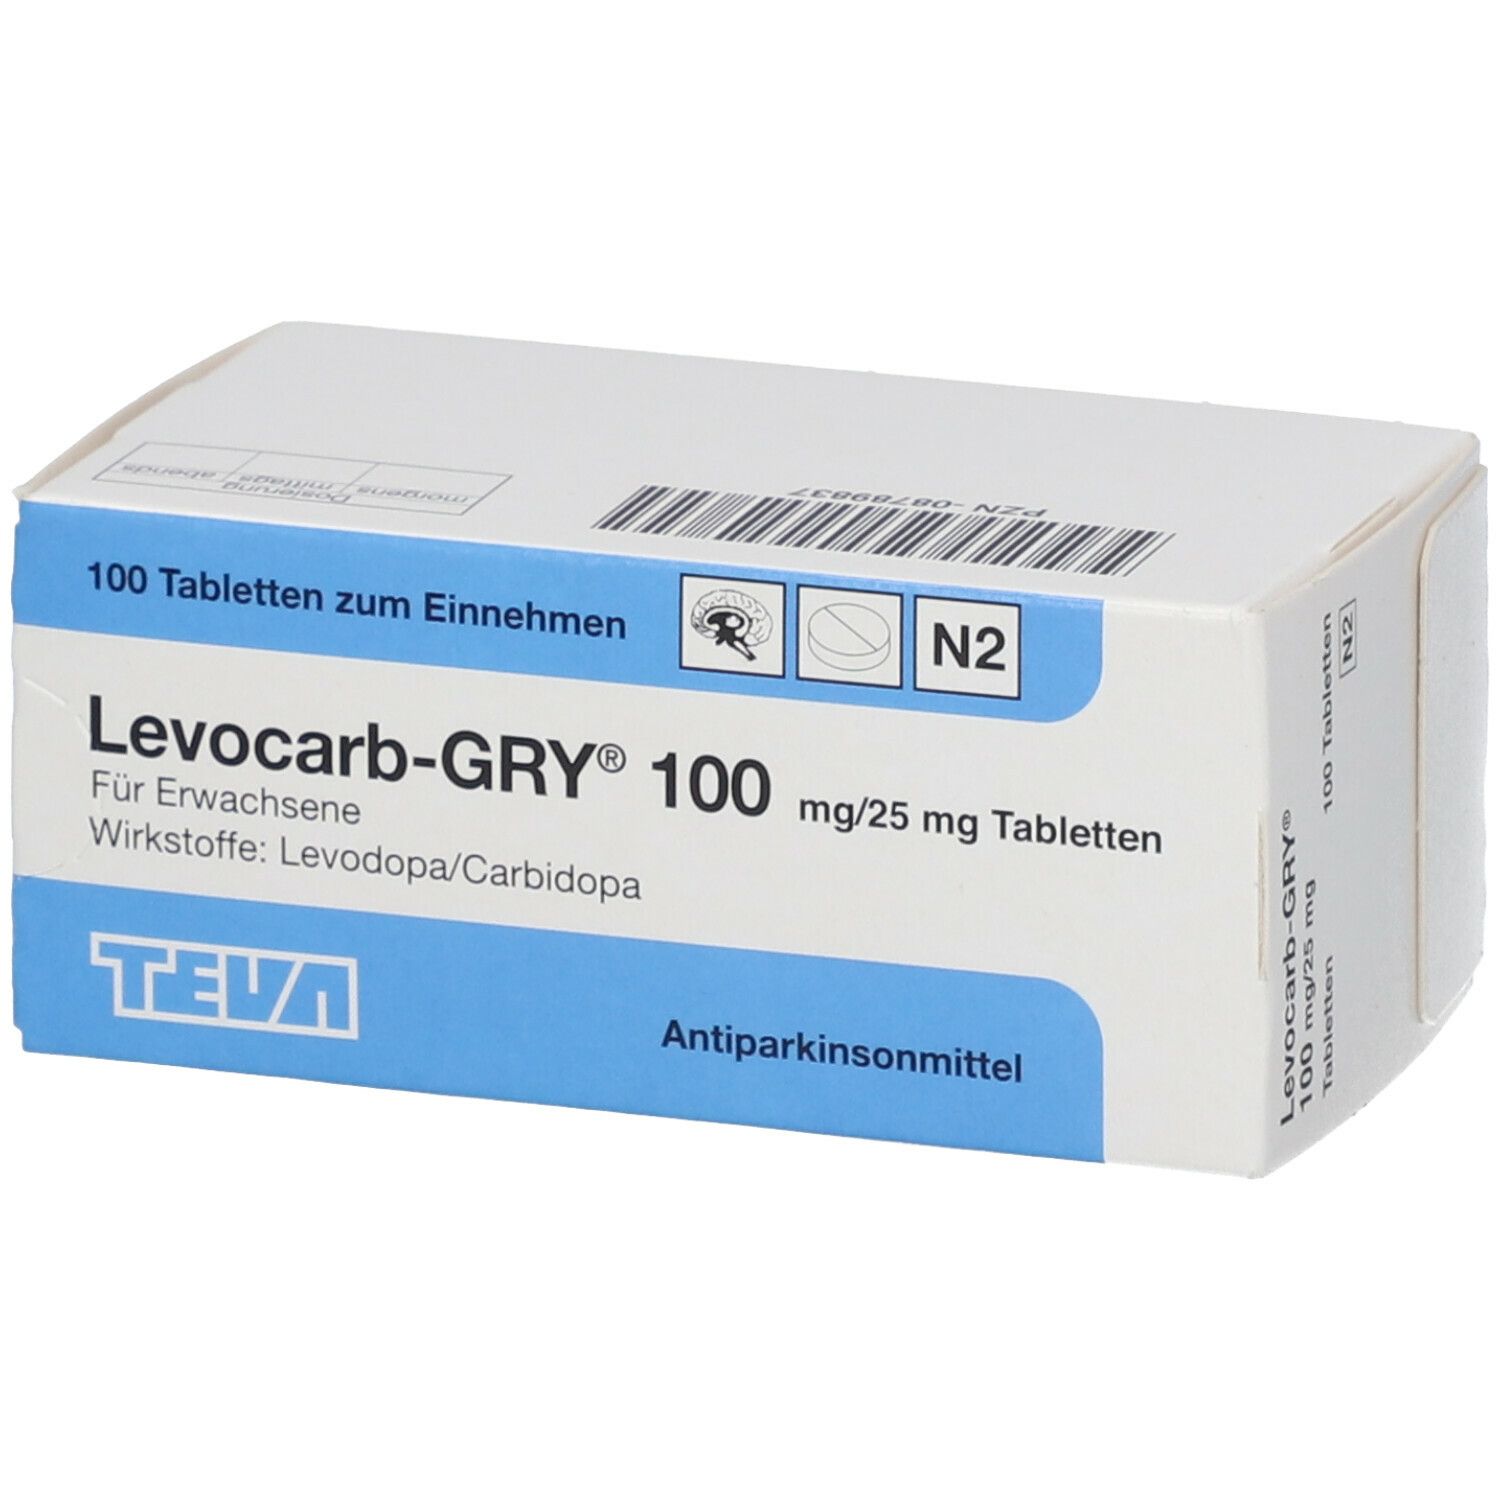 Levocarb-GRY® 100 mg/25 mg